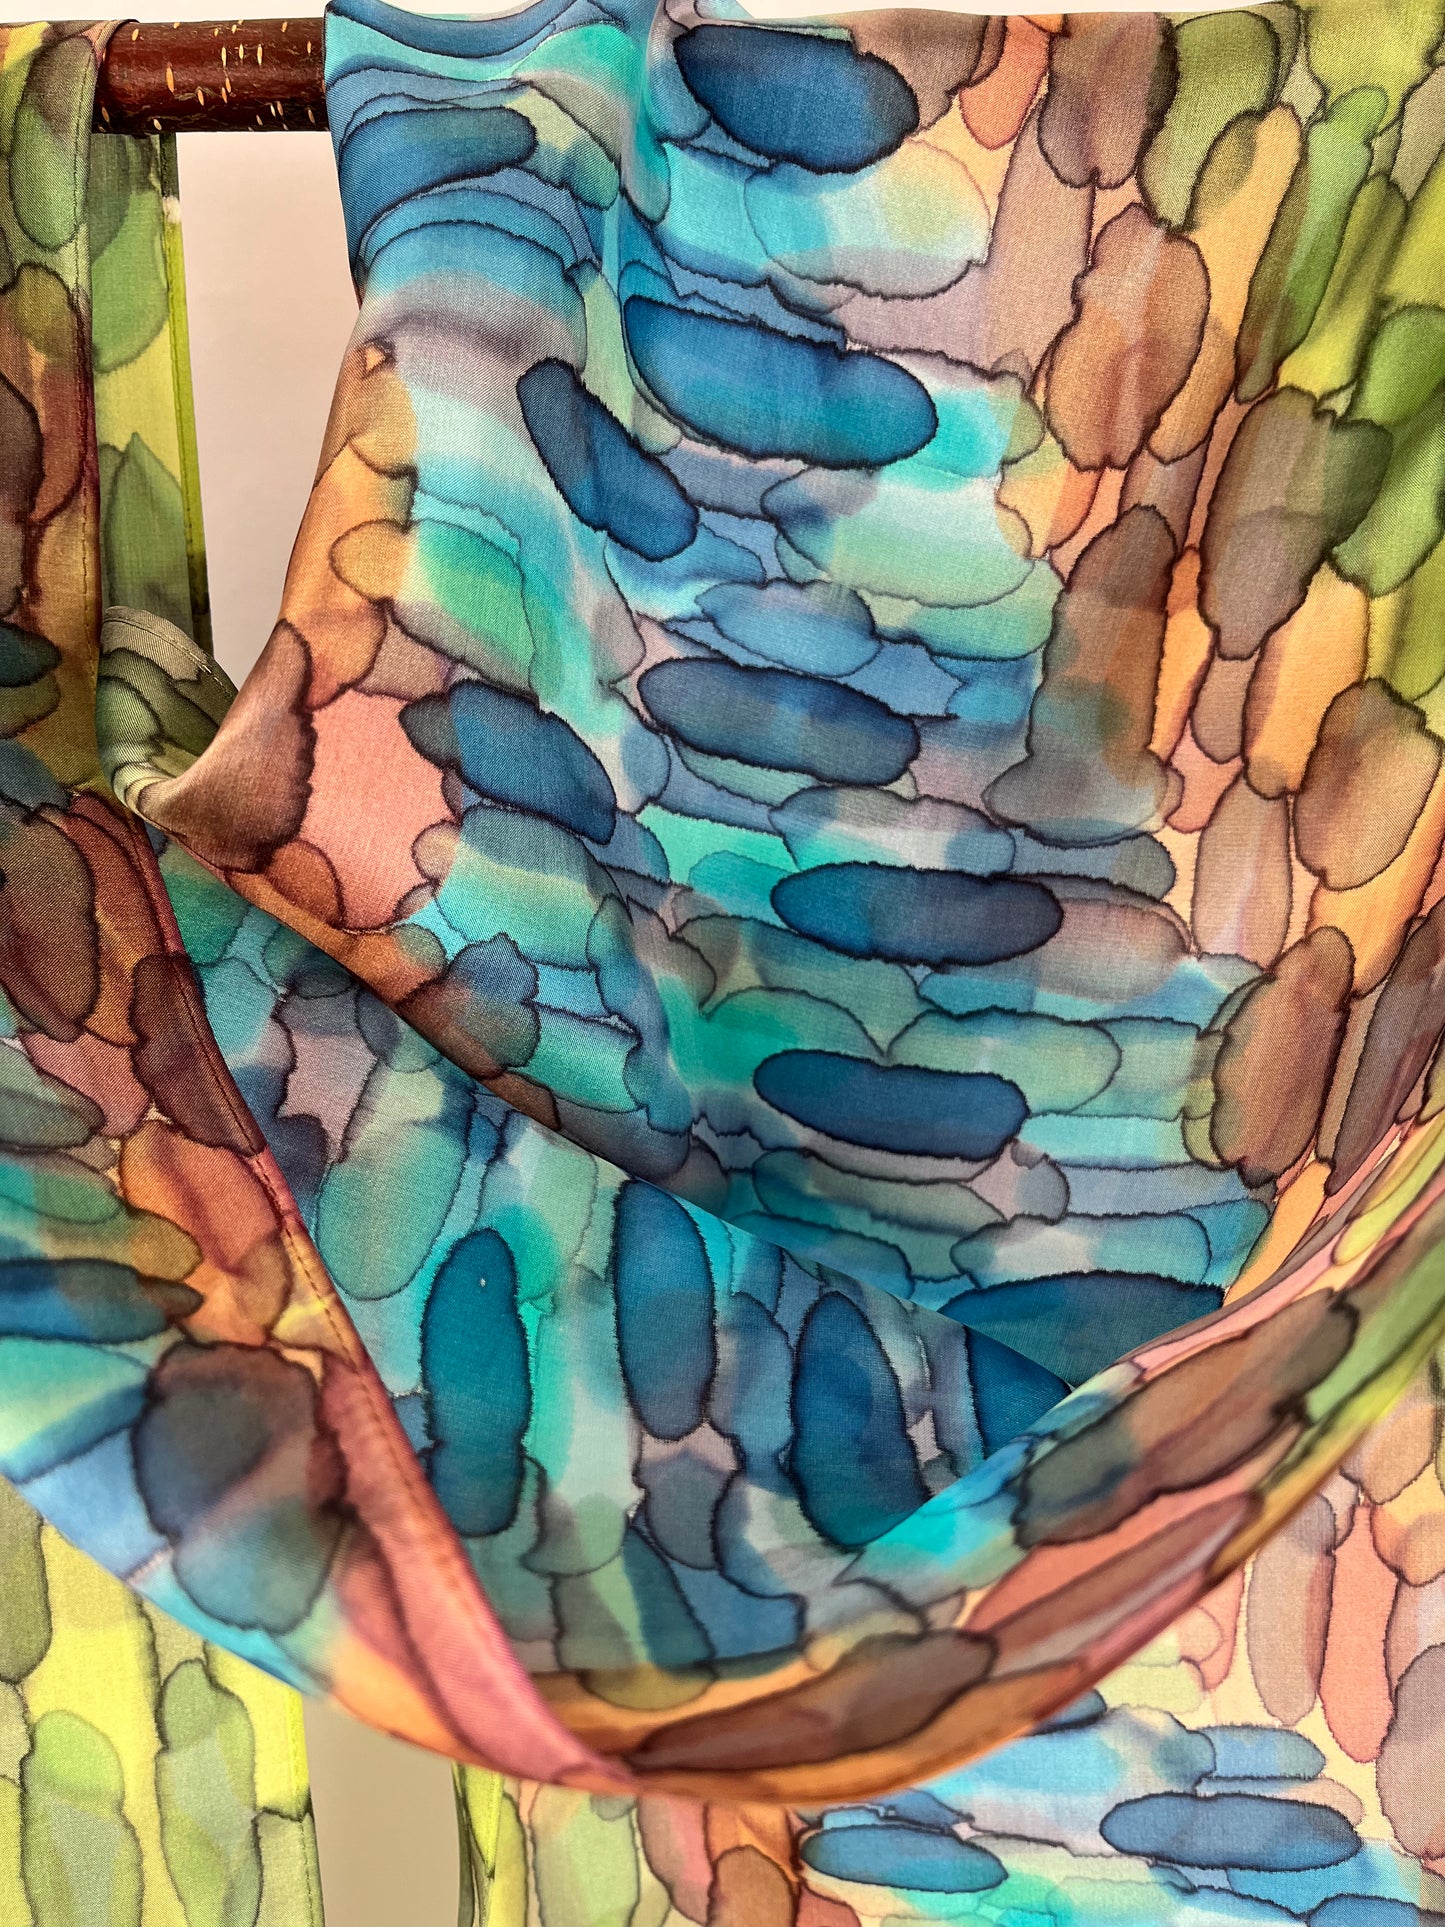 “A River Runs Through It” - Hand-dyed Silk Scarf - $130